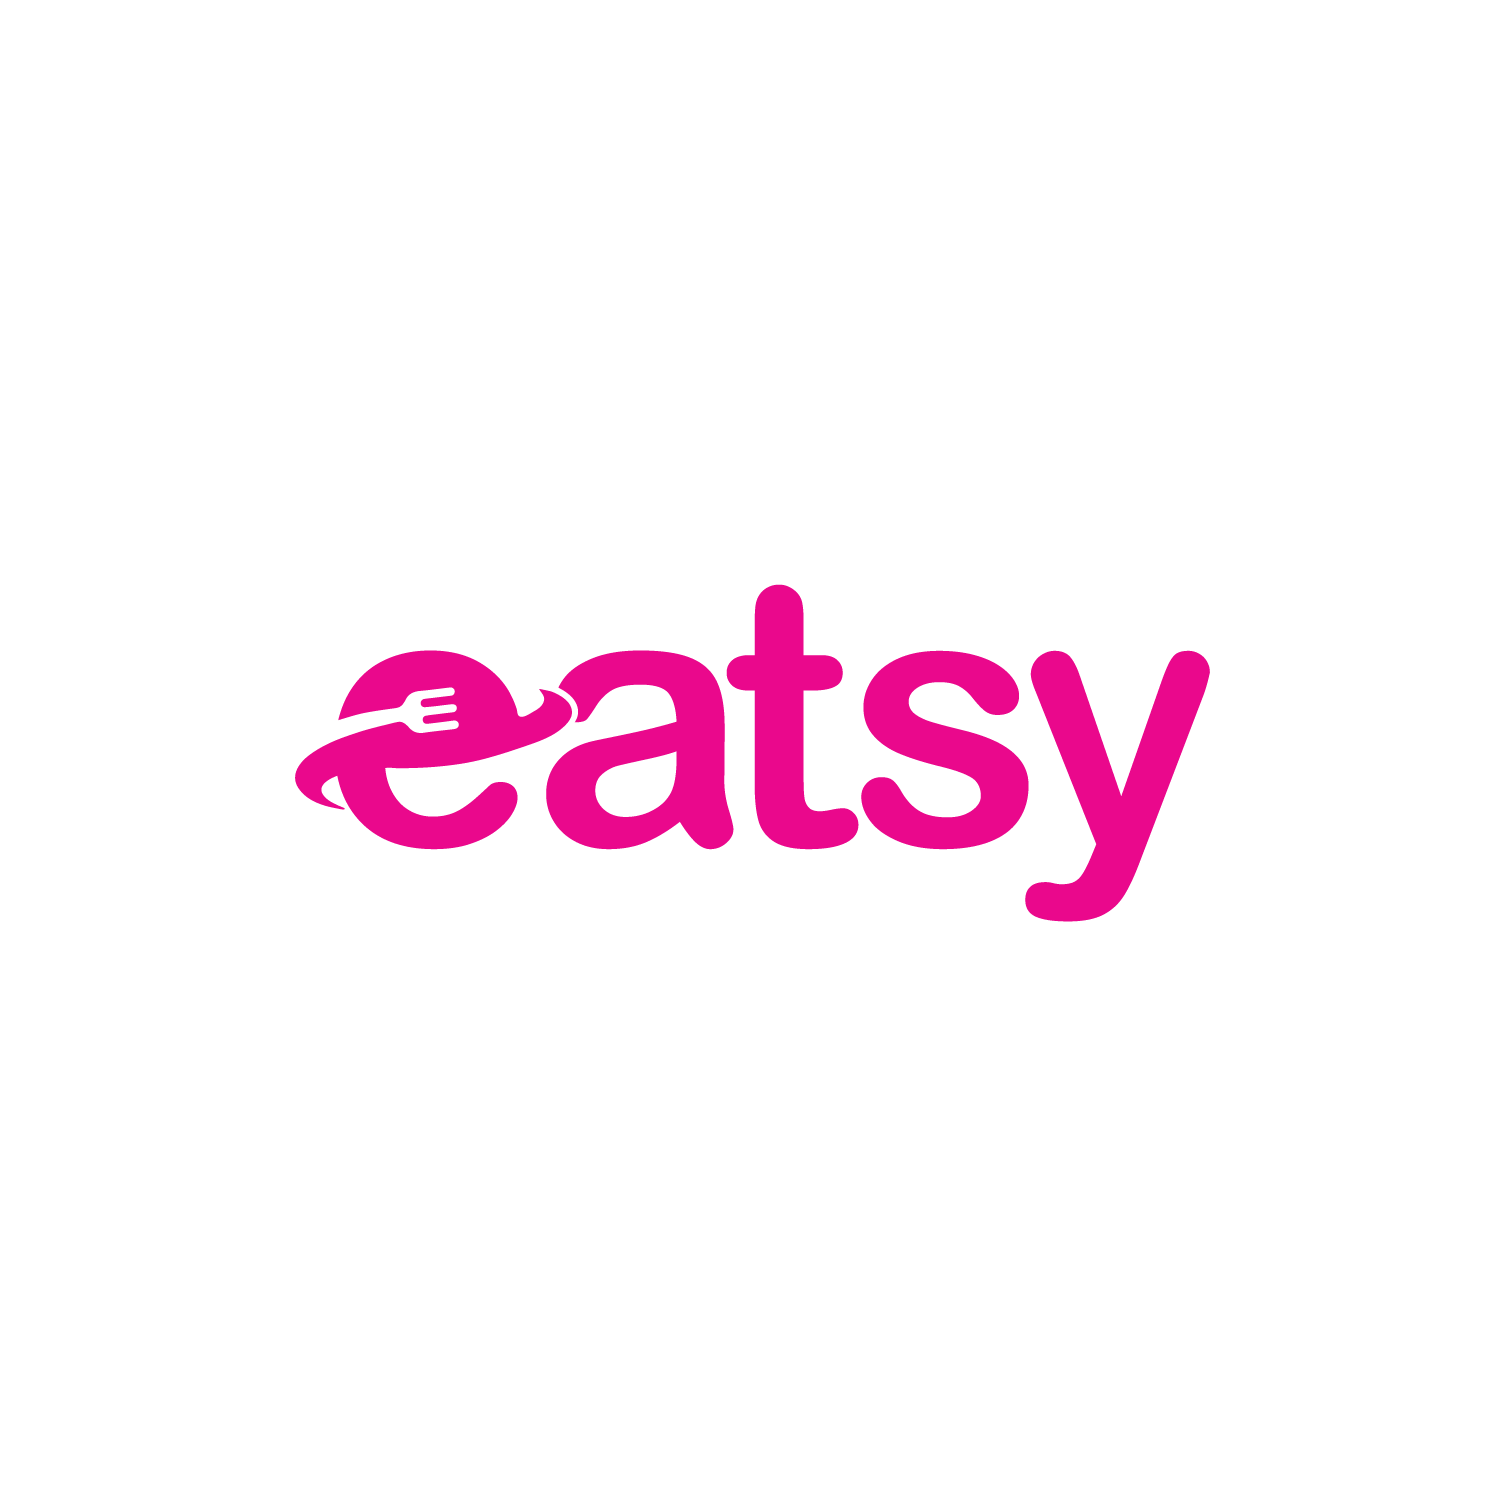 eatsy